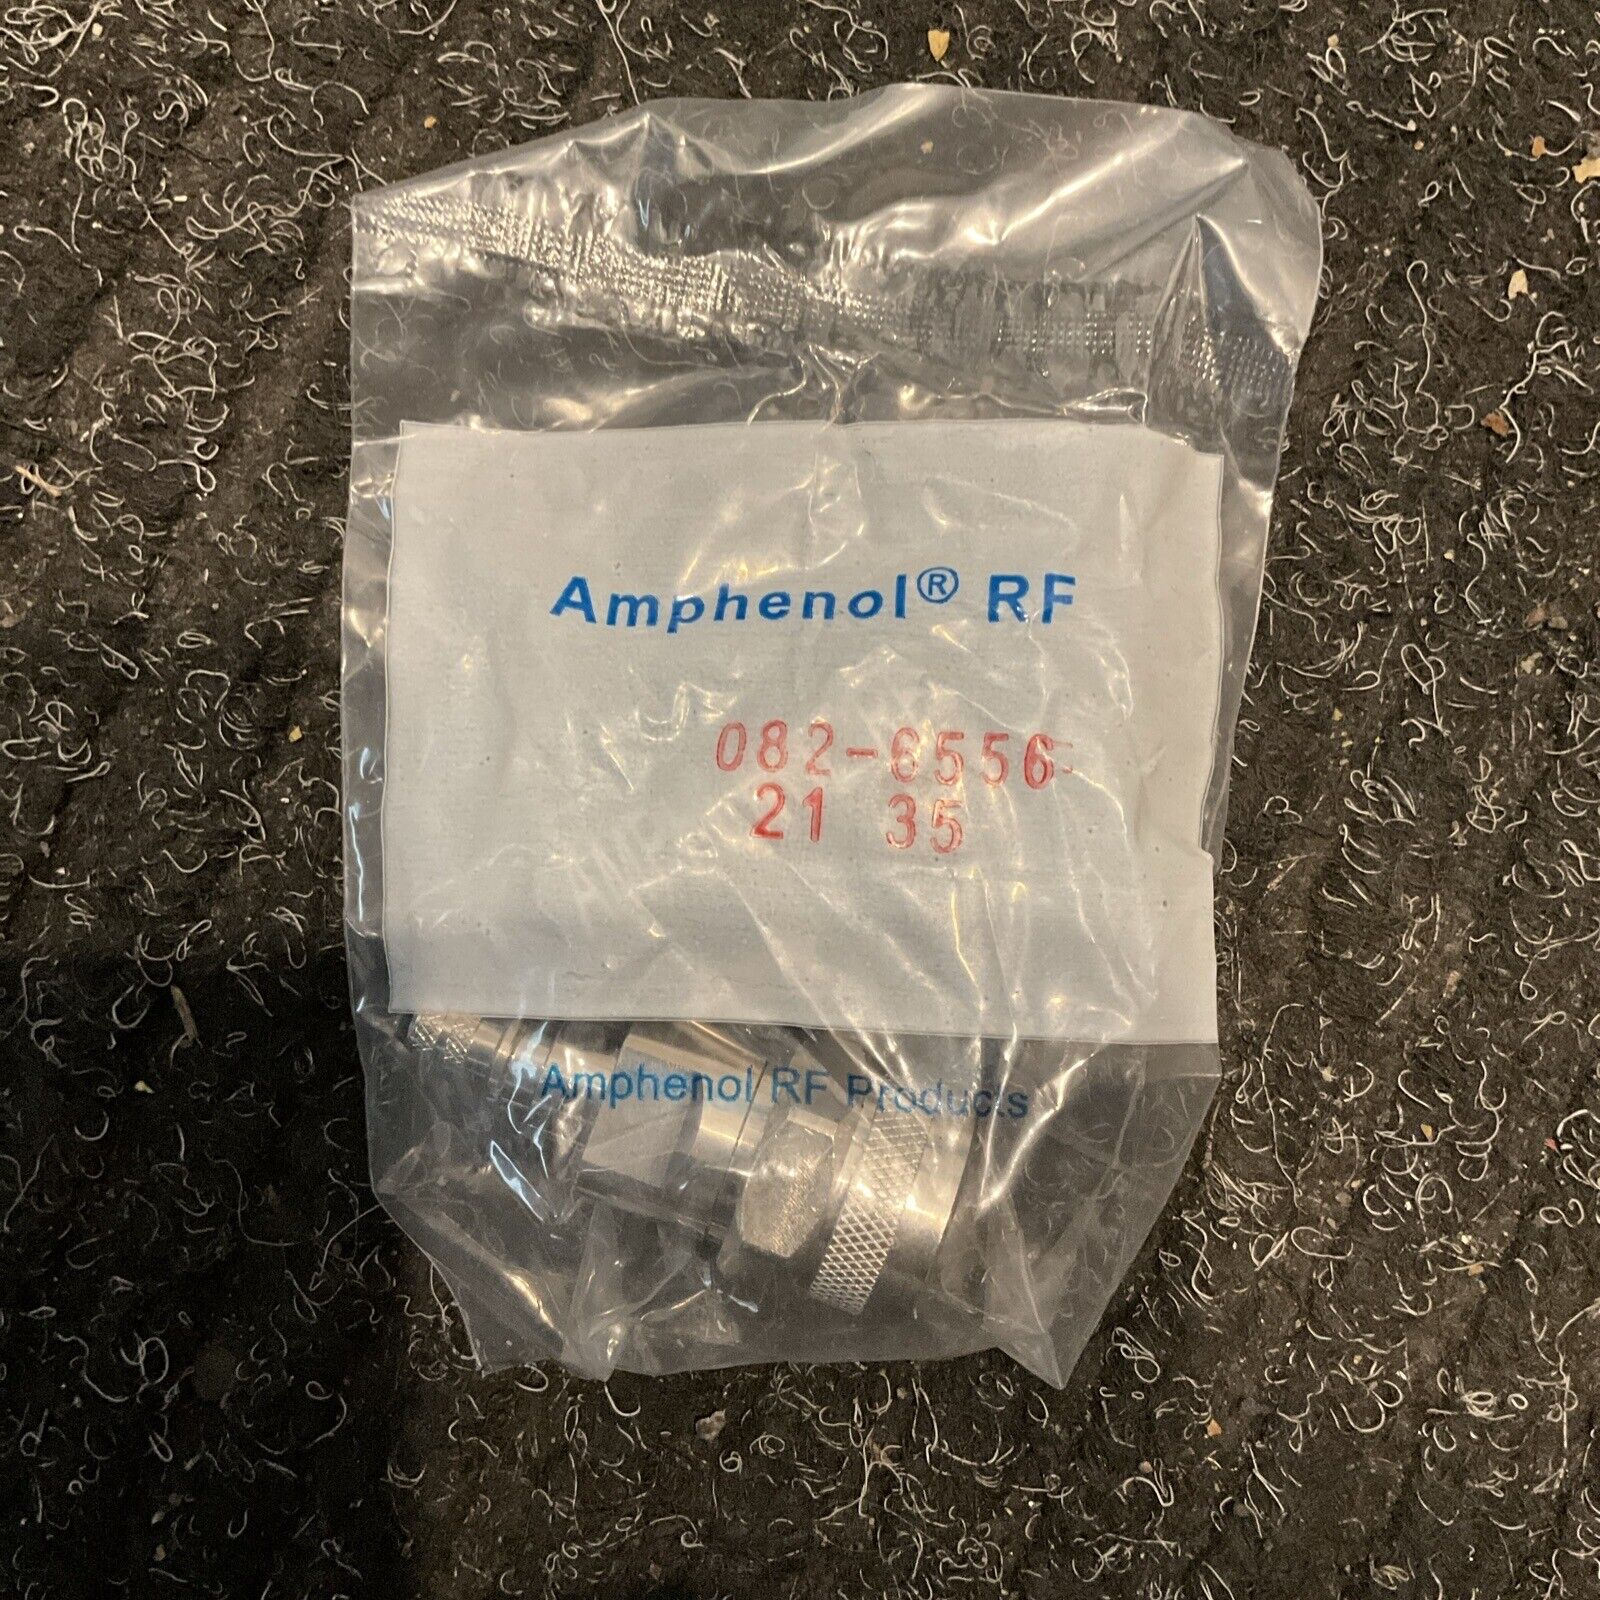 amphenol RF connector 082-6556